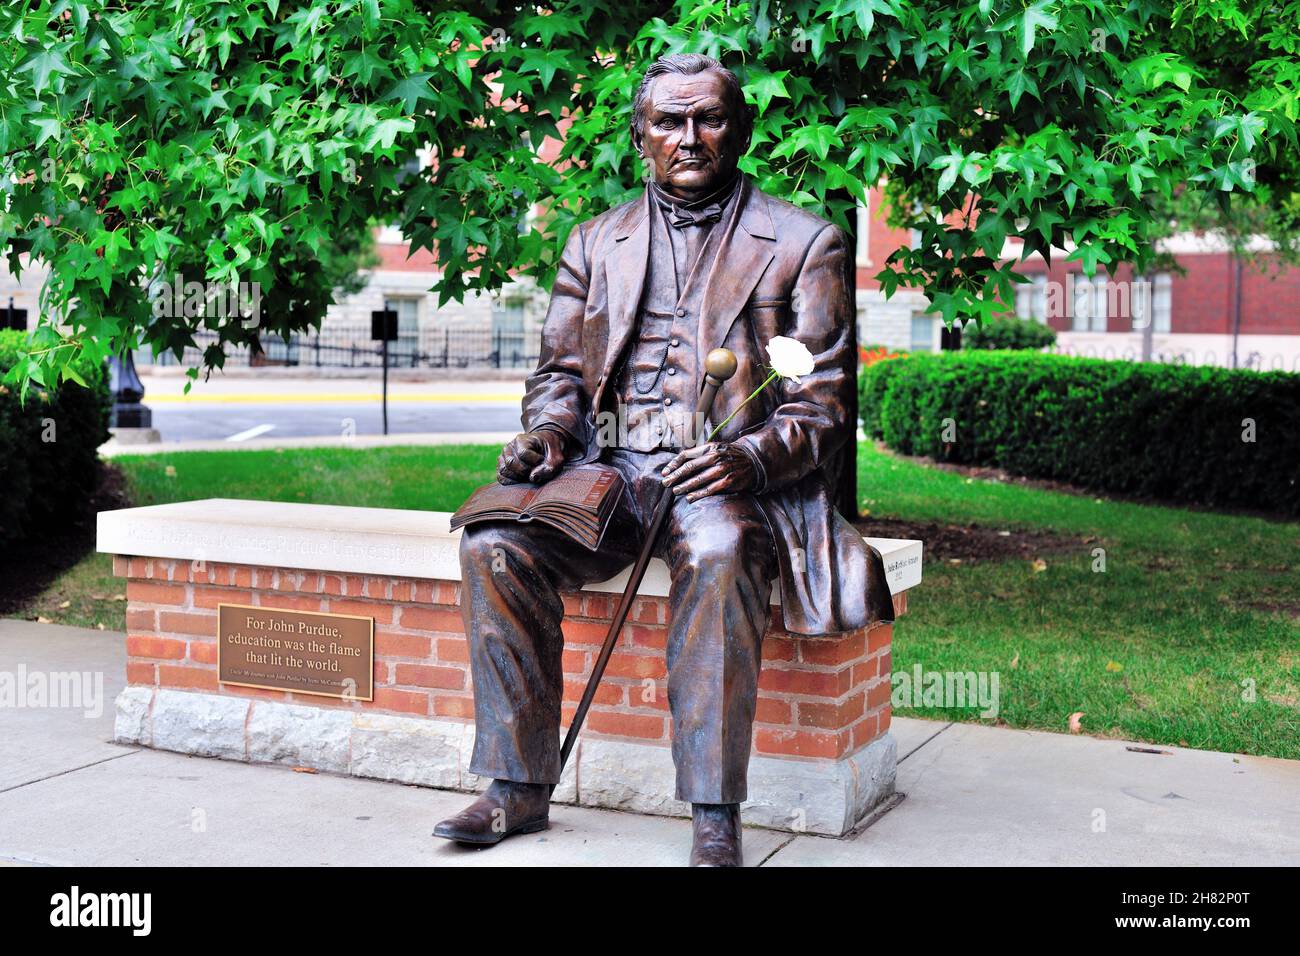 West Lafayette, Indiana, États-Unis.Une statue de John Purdue dans Founders Park sur le campus de l'université Purdue. Banque D'Images